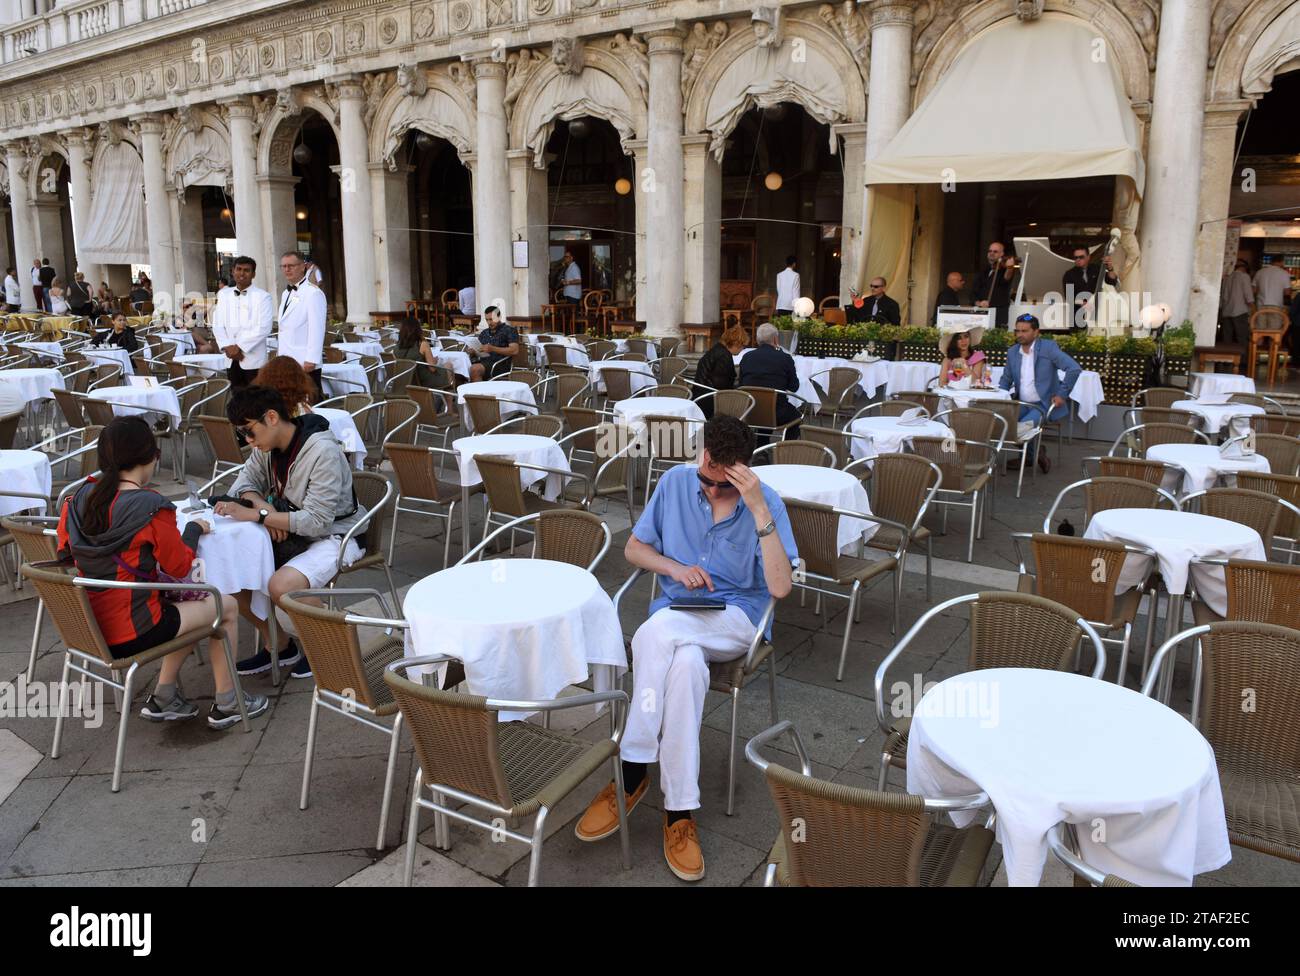 Venise, Italie - 07 juin 2017 : personnes dans un café sur la place San Marco à Venise. Banque D'Images